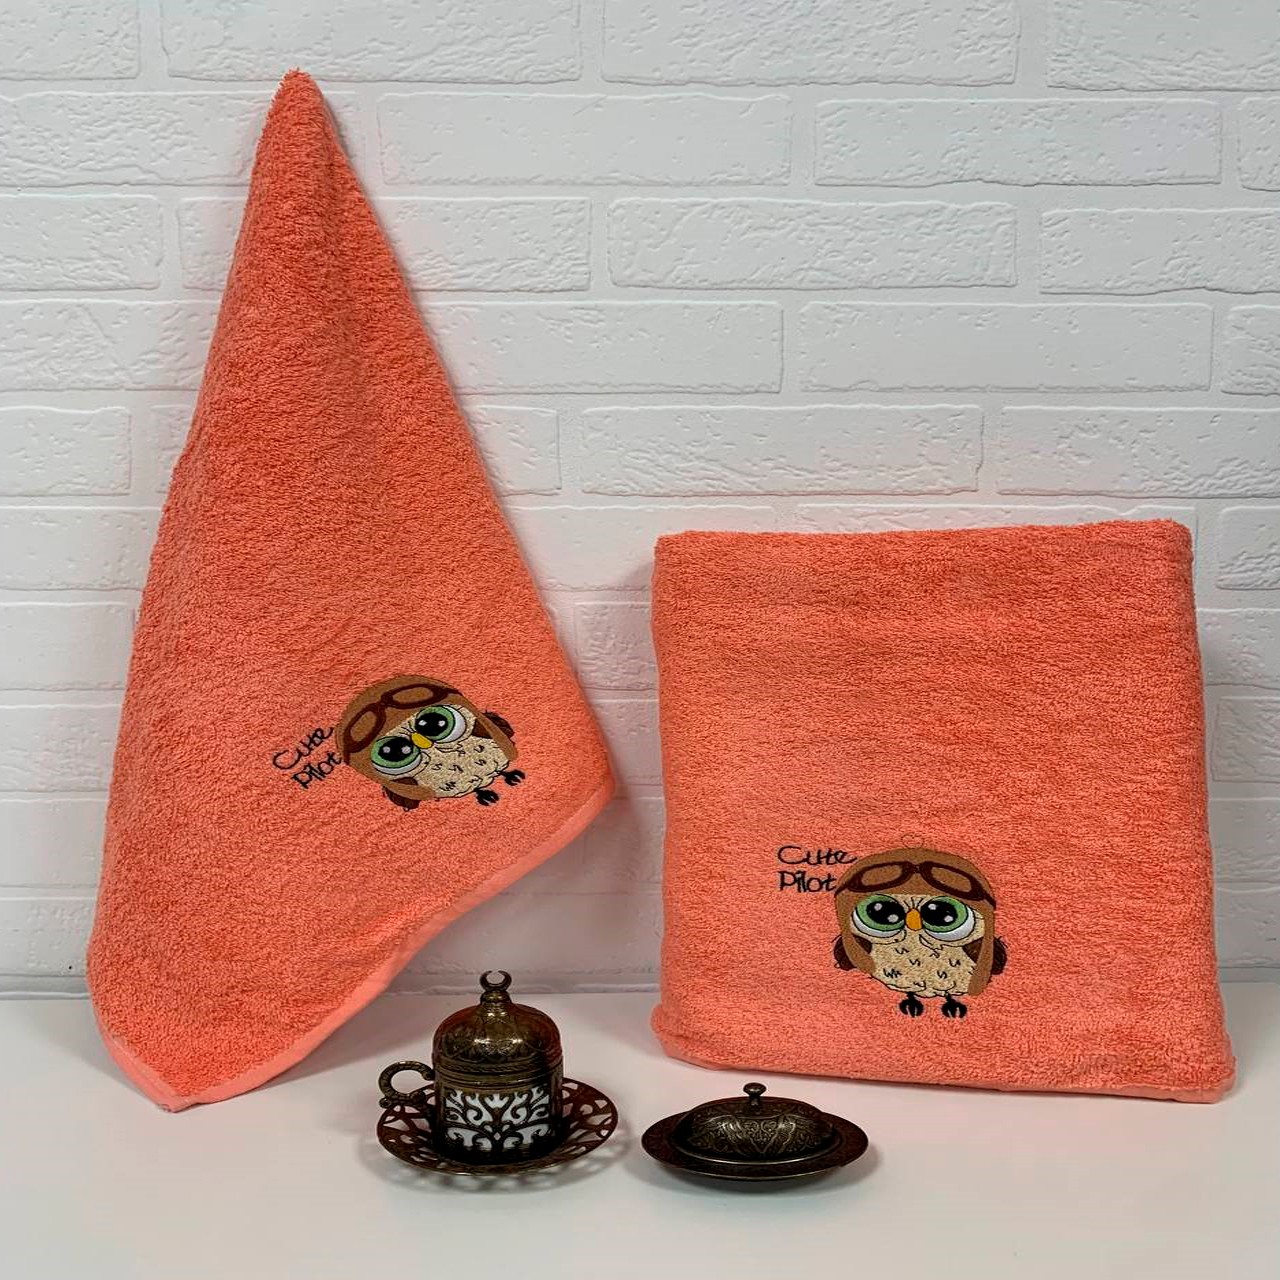 Полотенце Сова цвет: оранжевый (50х90 см,70х140 см), размер 70х140 см, 50х90 см